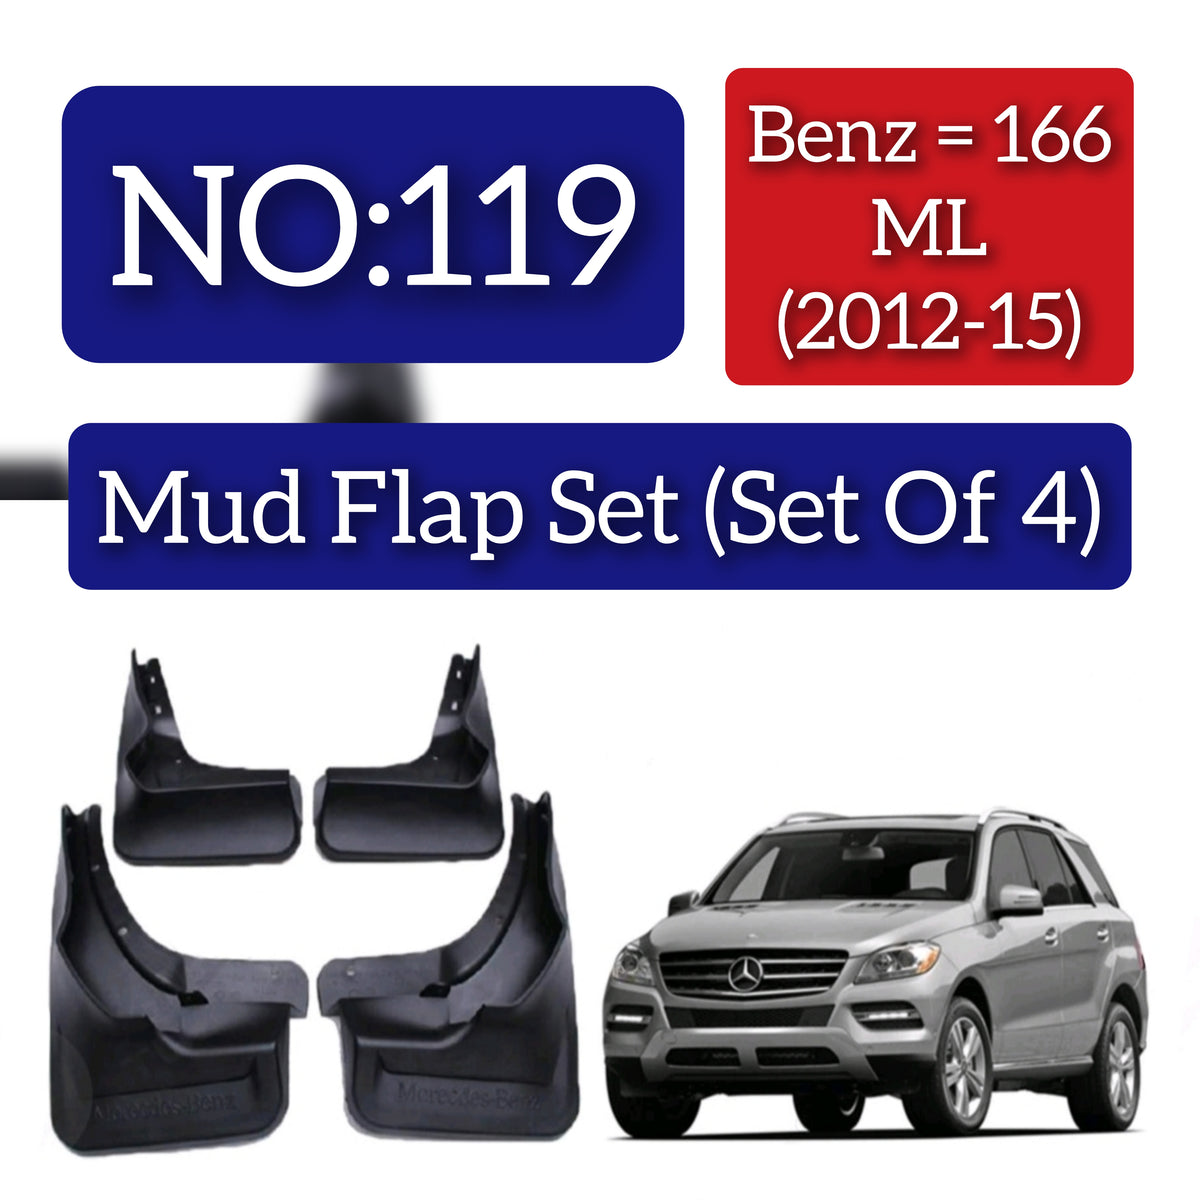 Mercedes Benz 166 ML (2012-15) Mud Flap Set (Set of 4) Tag 119